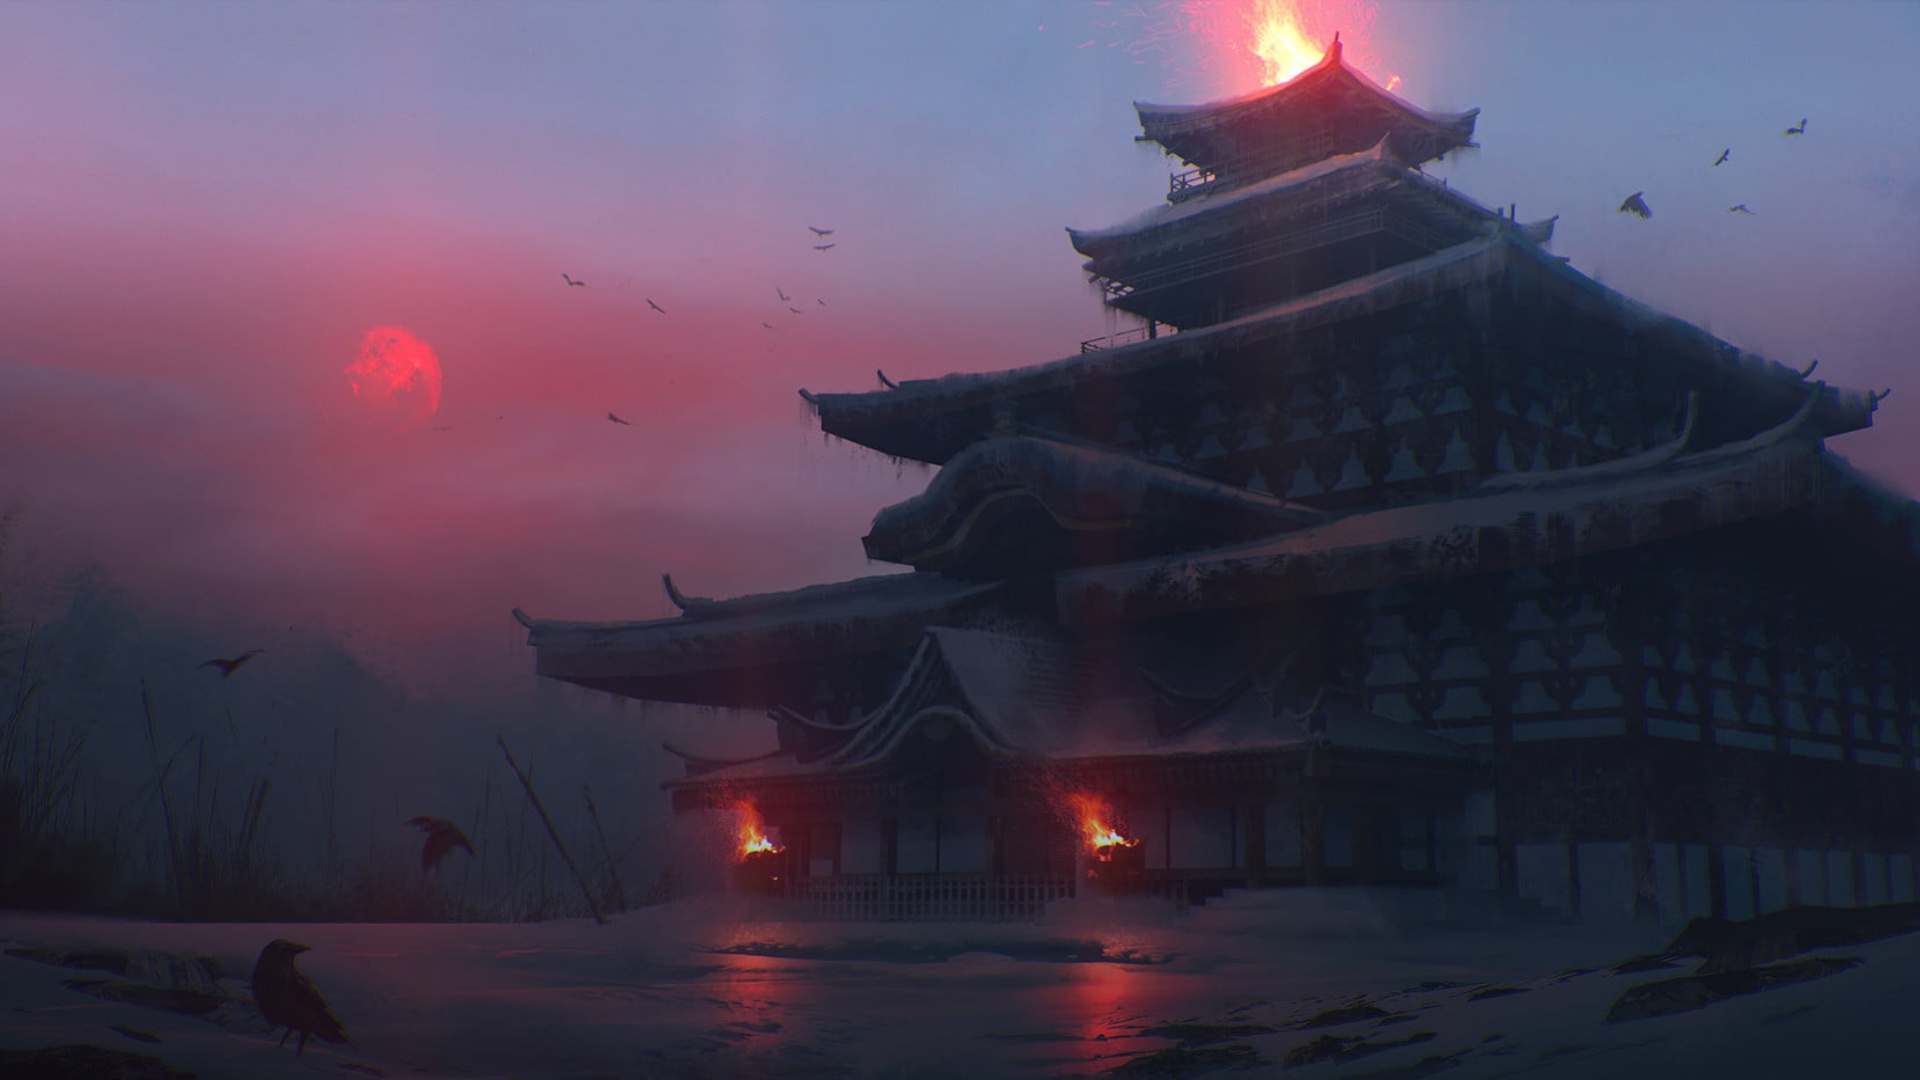 самурайский храм фото